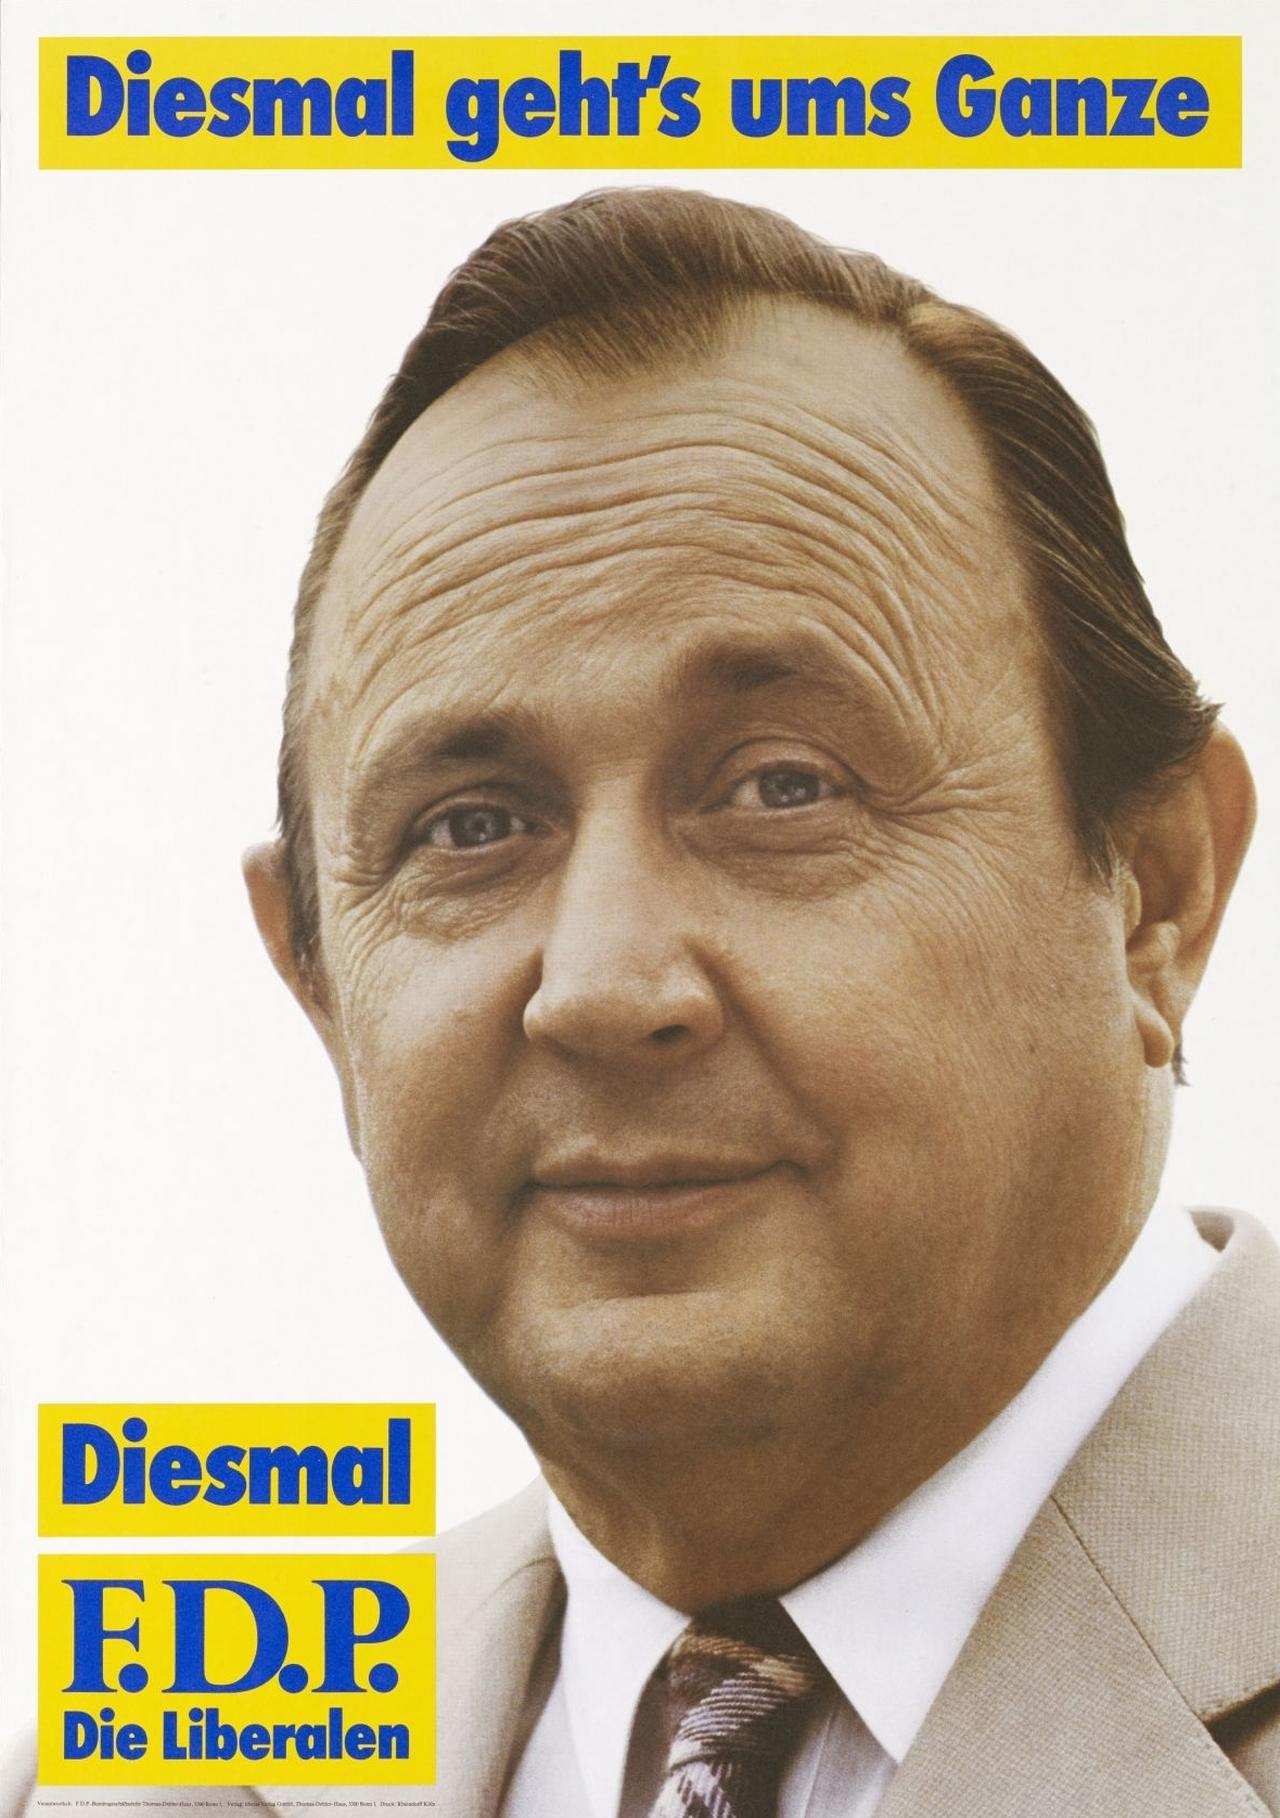 Wahlplakat der FDP mit Profilfoto von Hans-Dietrich Genscher. Slogan: 